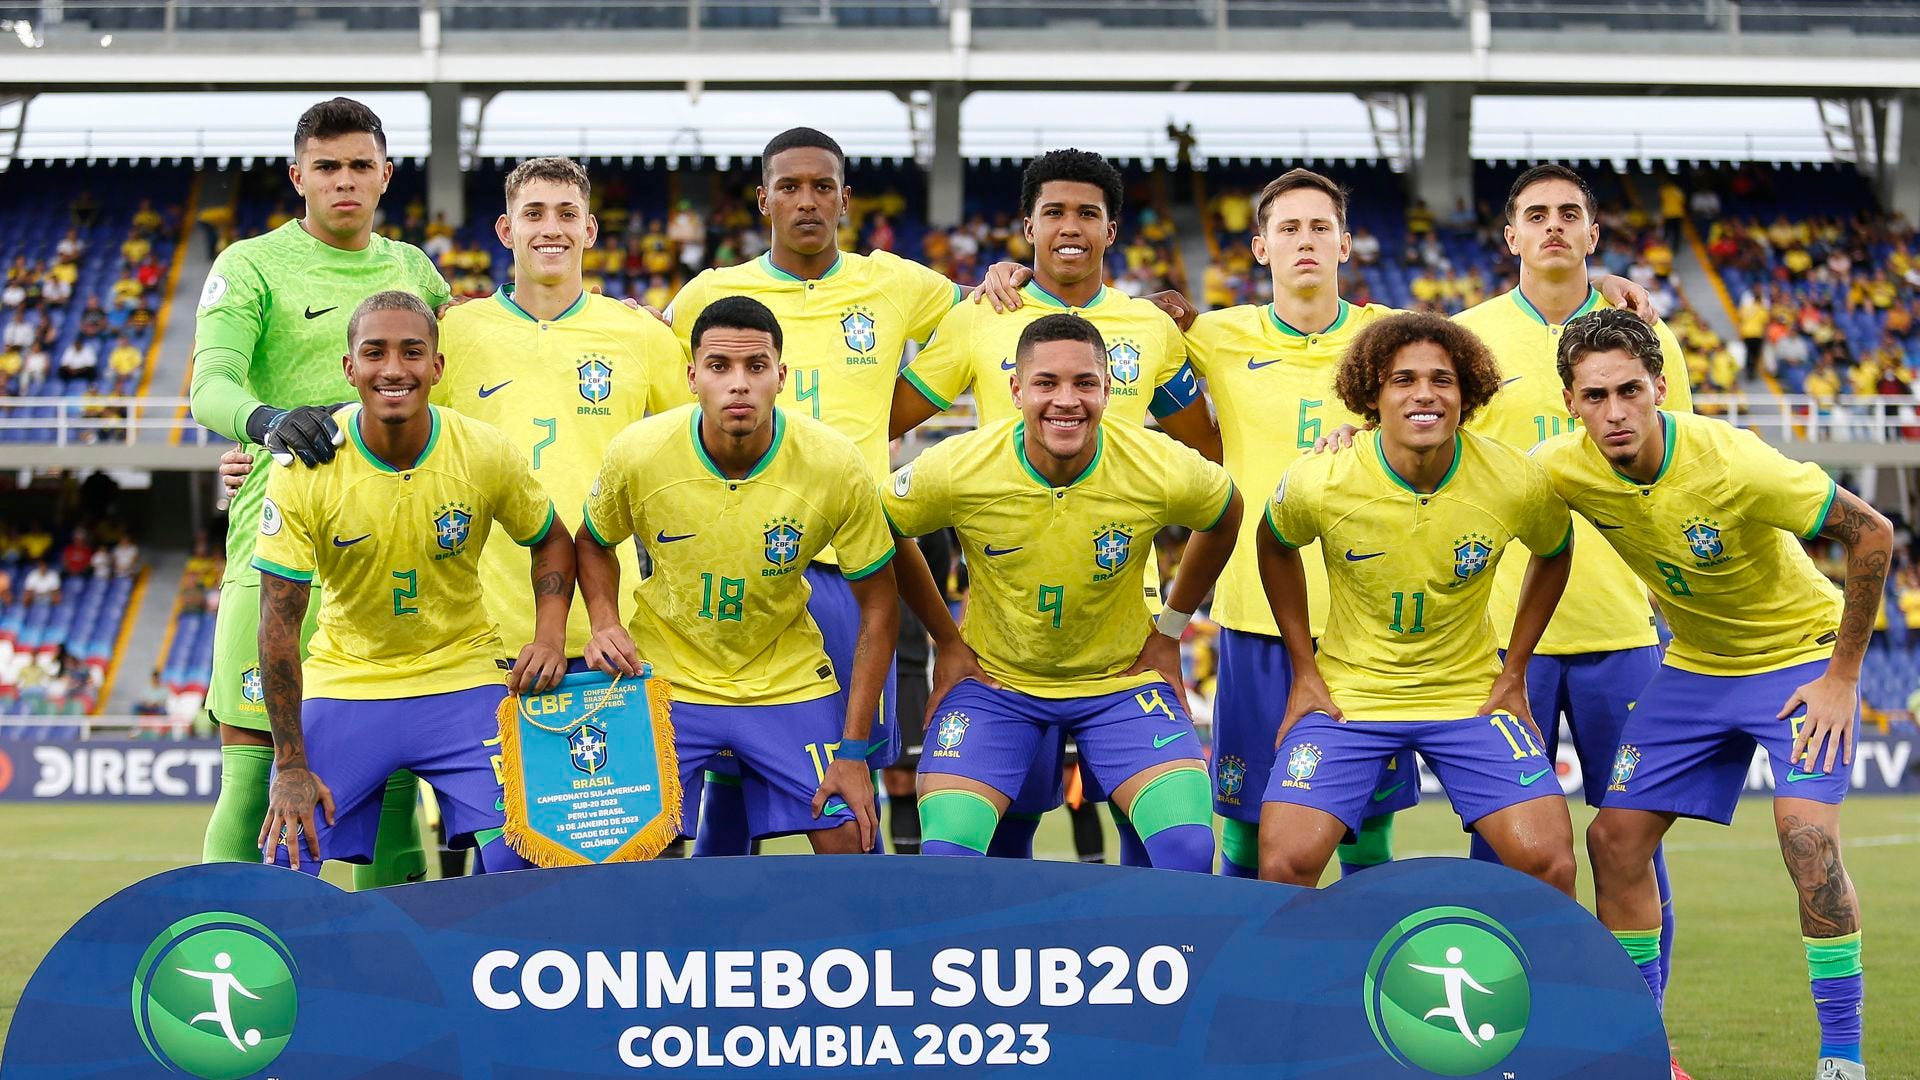 Por onde andam? Relembre os jogadores campeões do Mundial Sub-20 com a  seleção brasileira em 2011